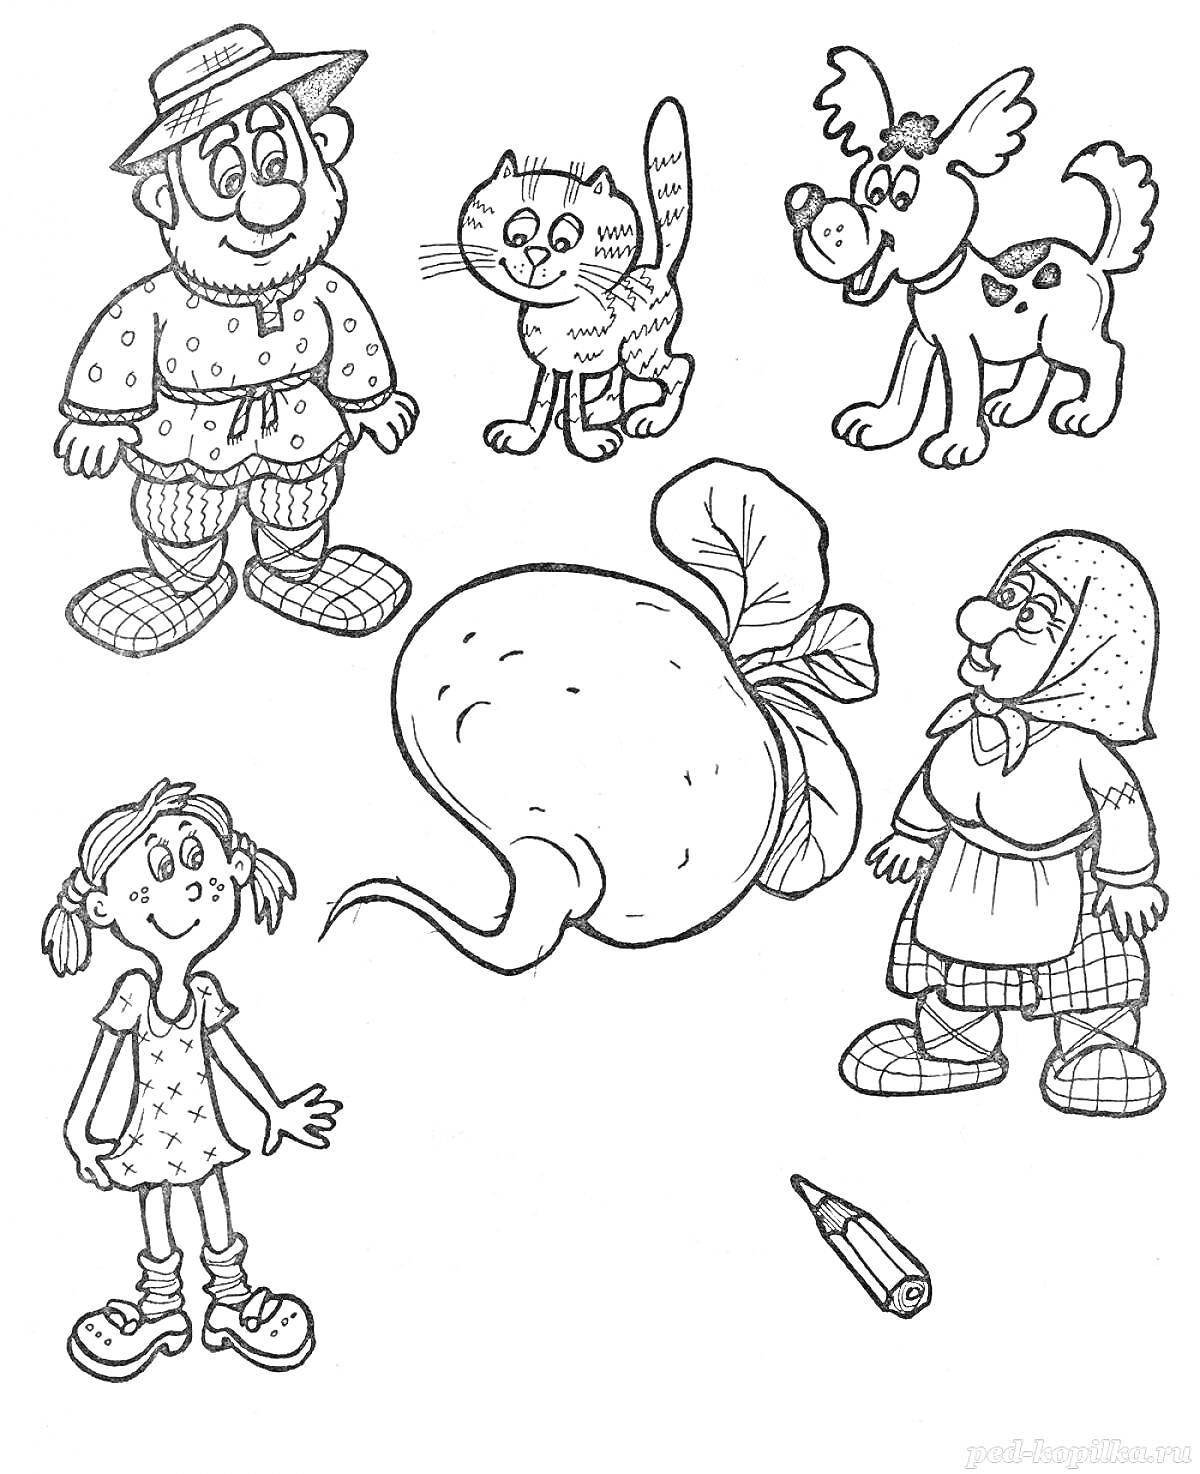 Раскраска Репка, персонажи: дед, бабка, внучка, кошка, собака, репка, карандаш